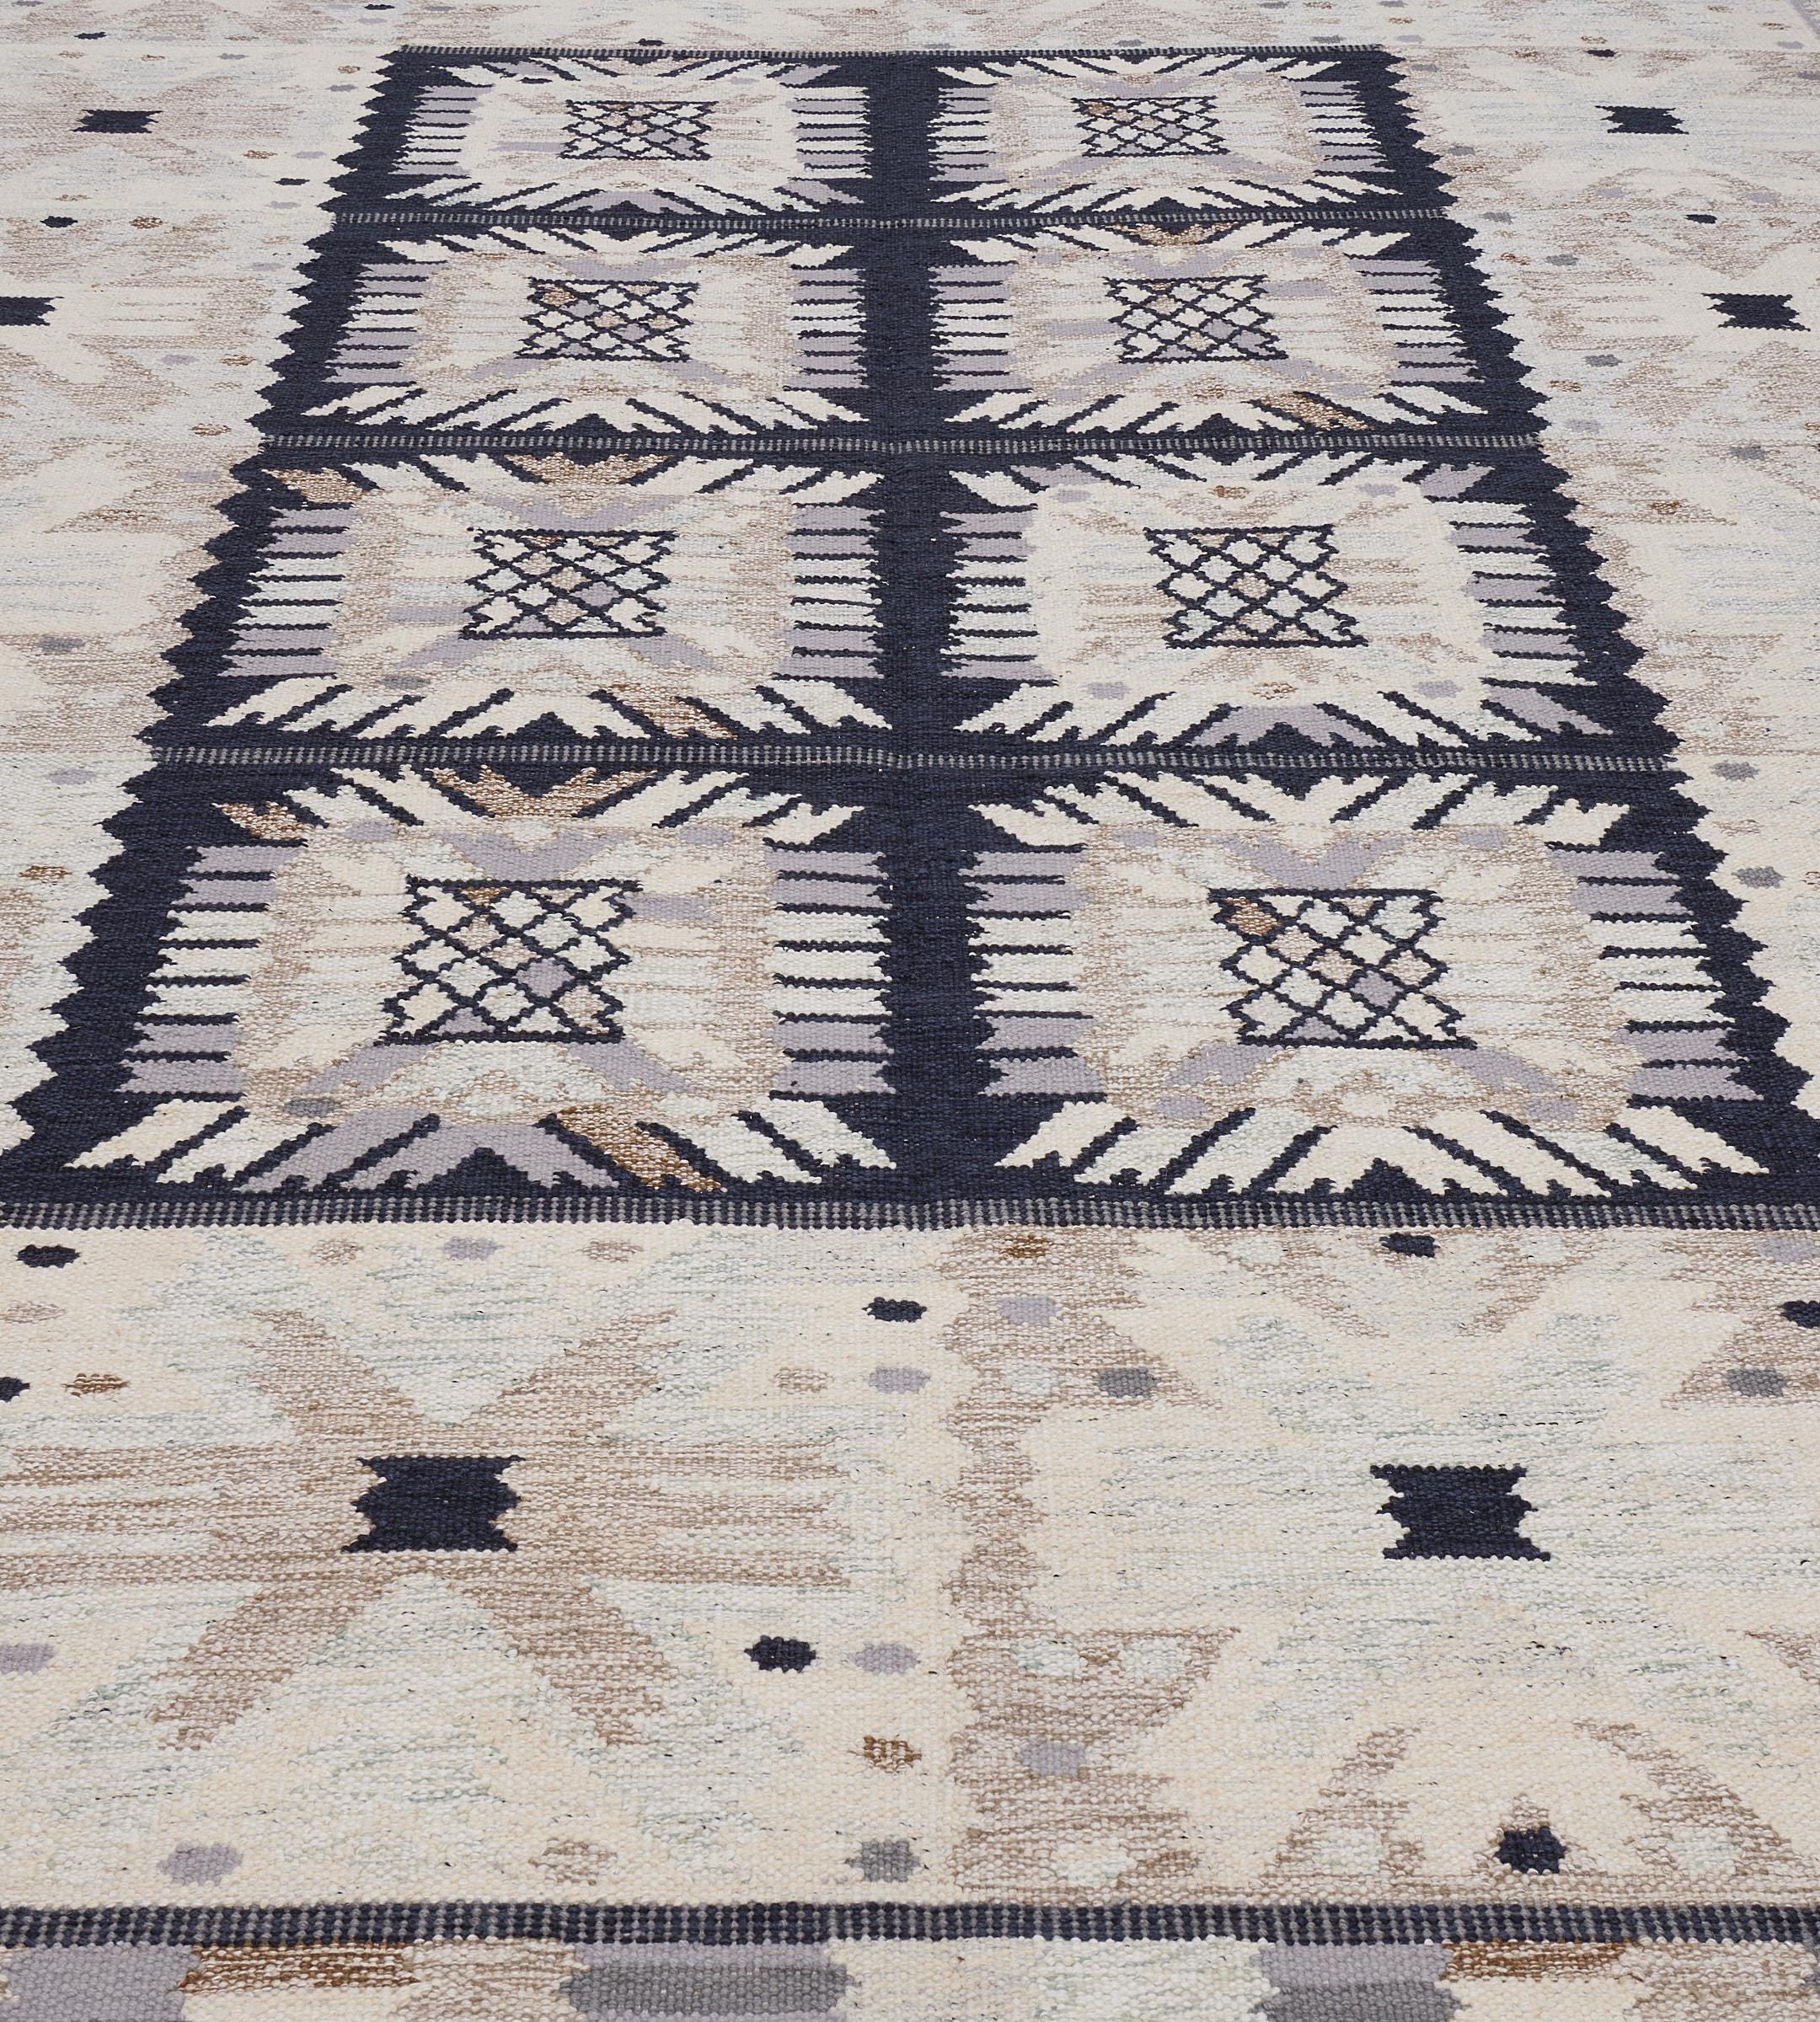 Die schwedische Kollektion ist in erster Linie von alten schwedischen Flachgewebe-Teppichen inspiriert, deren geometrische Muster auch im 21. Jahrhundert noch aktuell sind. In der Collection'S werden verschiedene Flachgewebetechniken verwendet, die